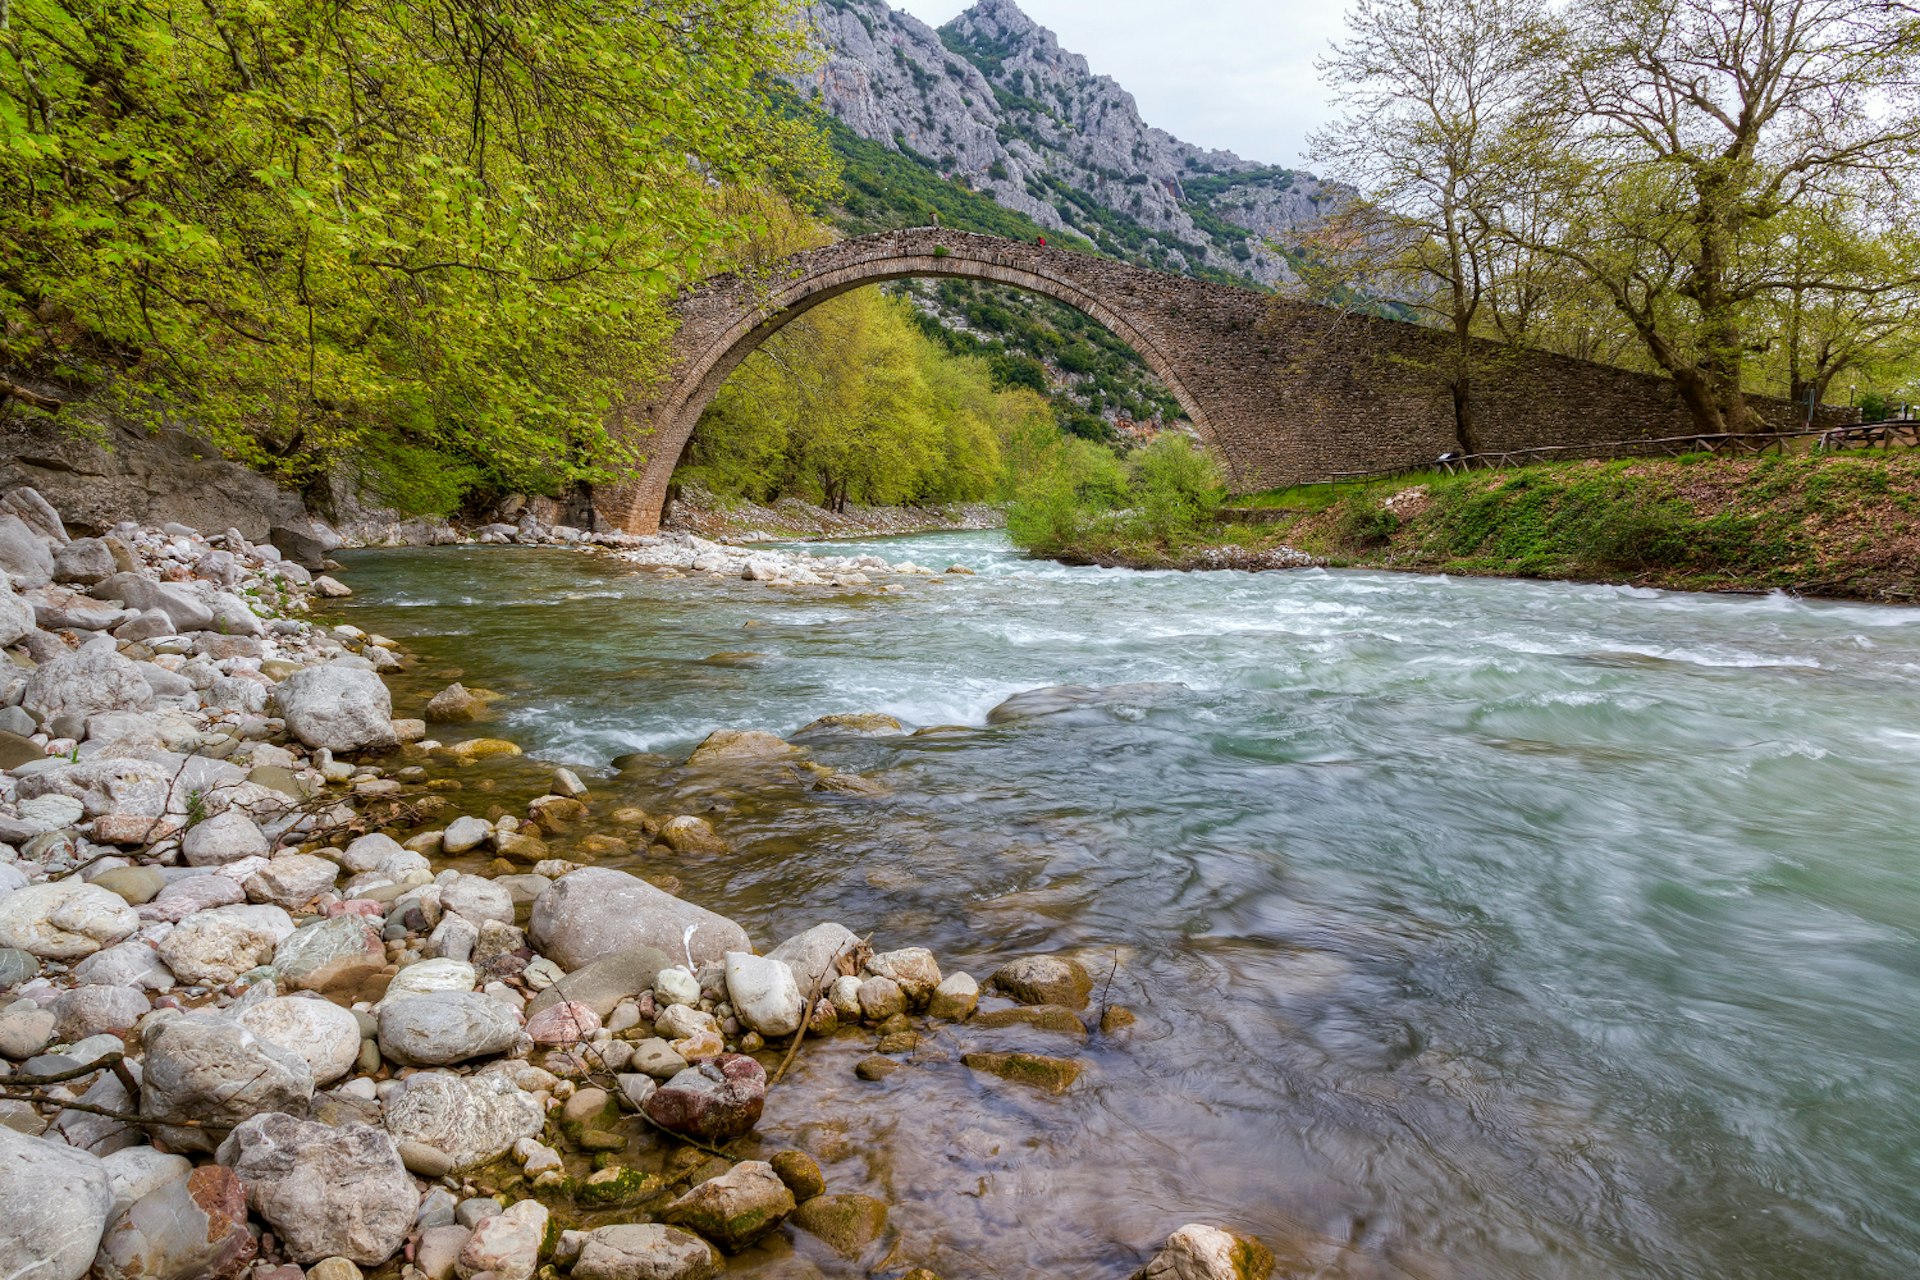 Arched stone bridge of Pyli, Pindos Range © Lefteris Papaulakis / Shutterstock